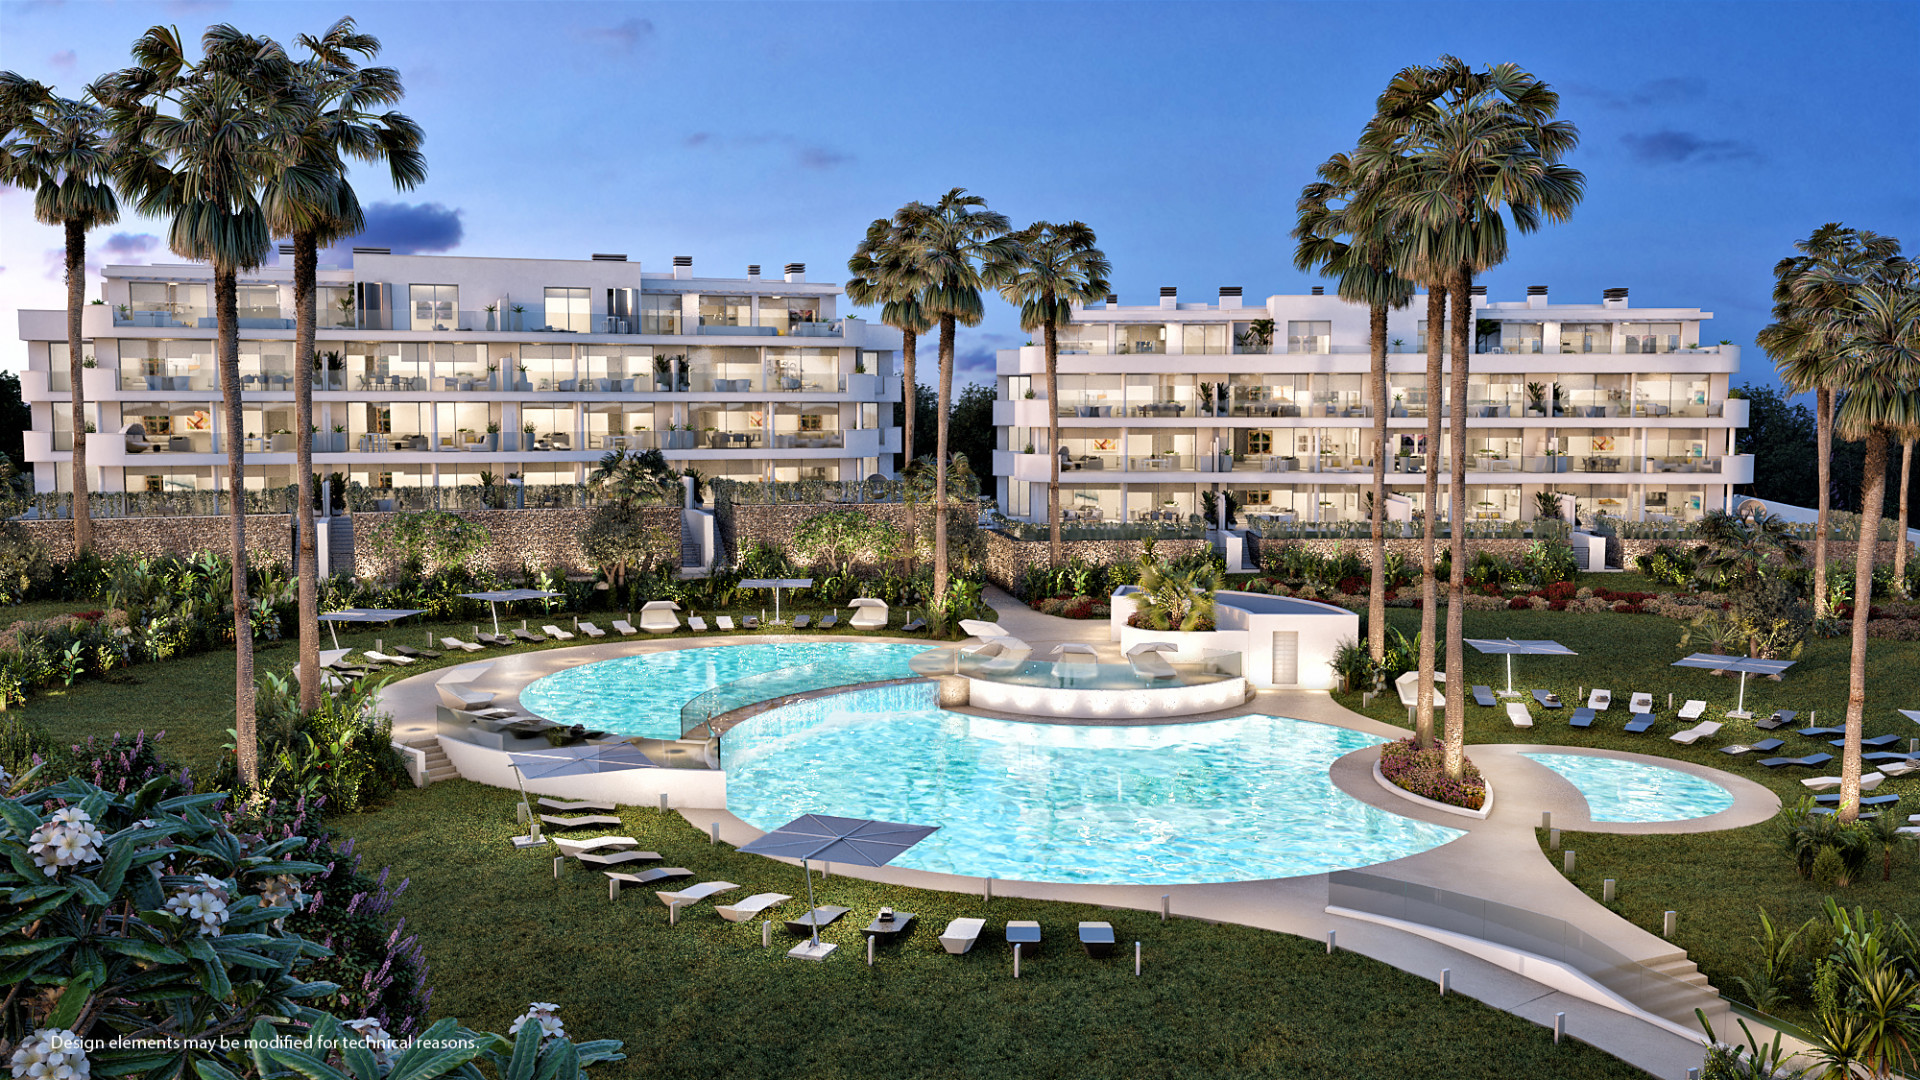 Prachtig ontworpen eigentijdse appartementen met uitzicht over de kust van Fuengirola.PL73